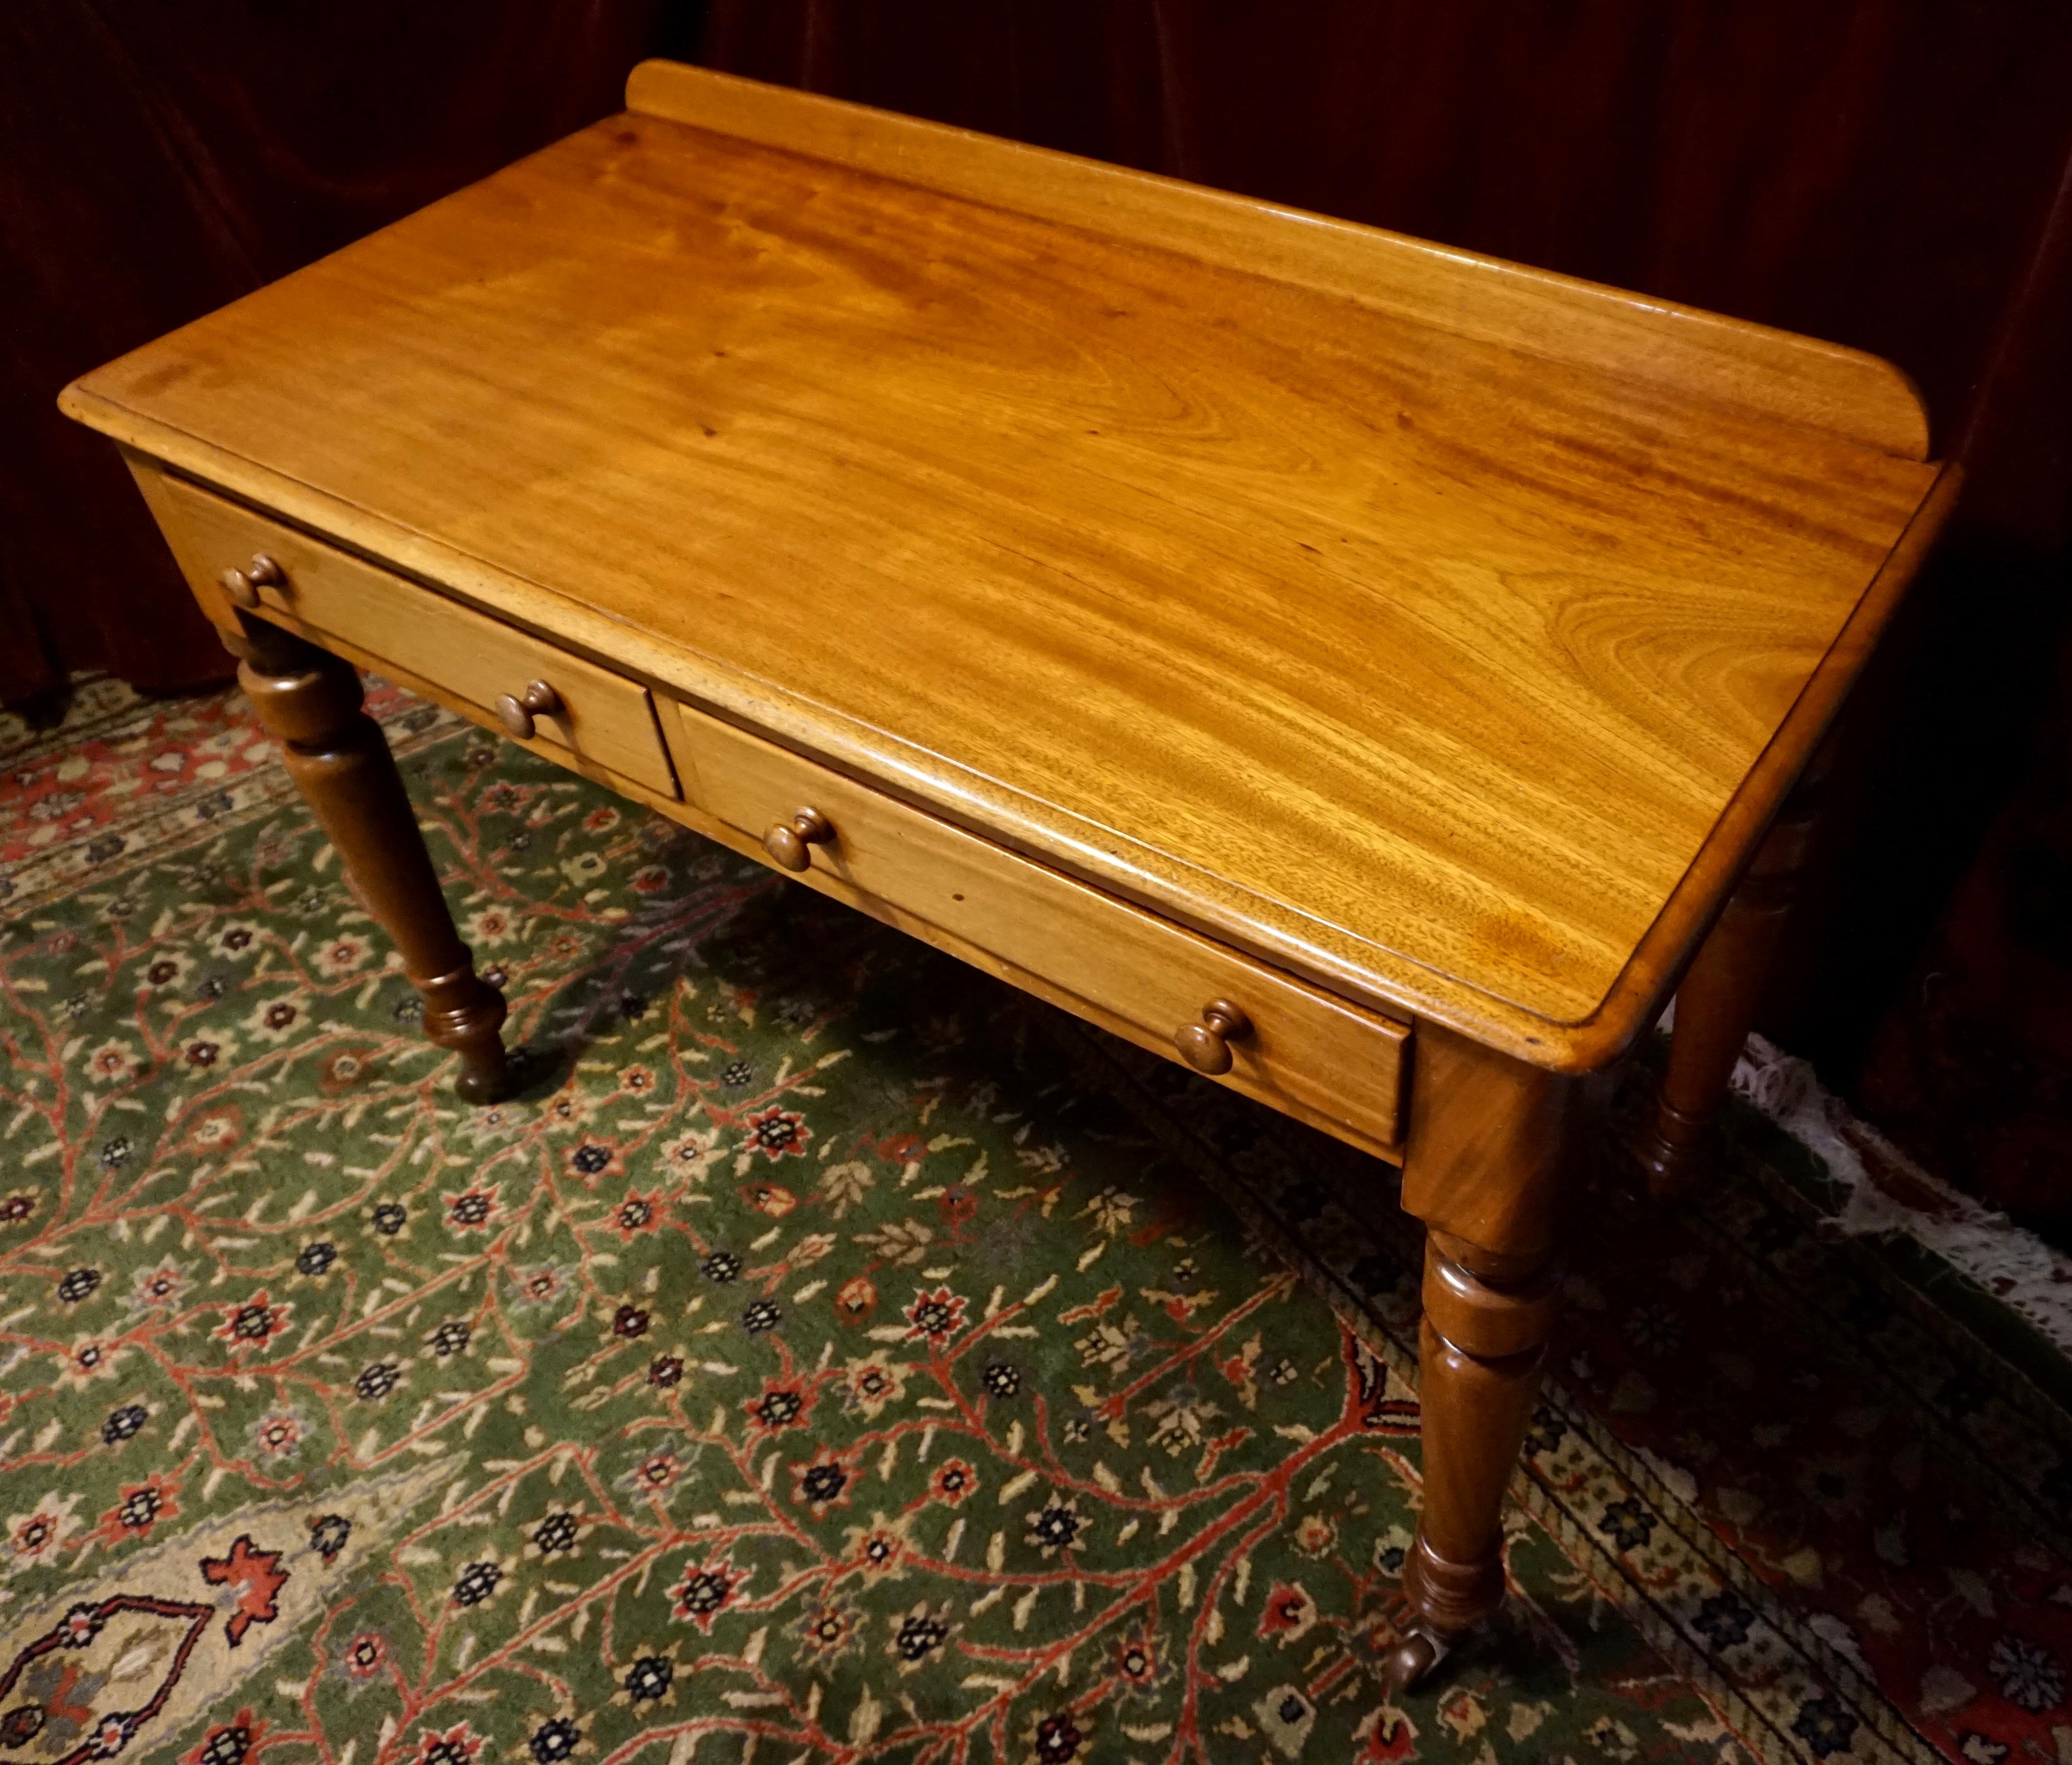 Schlichte Form und Eleganz zeichnen diesen schönen viktorianischen Schreibtisch aus, der aus altem Mahagoni handgefertigt wurde. Warme, frei fließende Maserungen in Verbindung mit alter Handwerkskunst sorgen für Raffinesse. Original sind